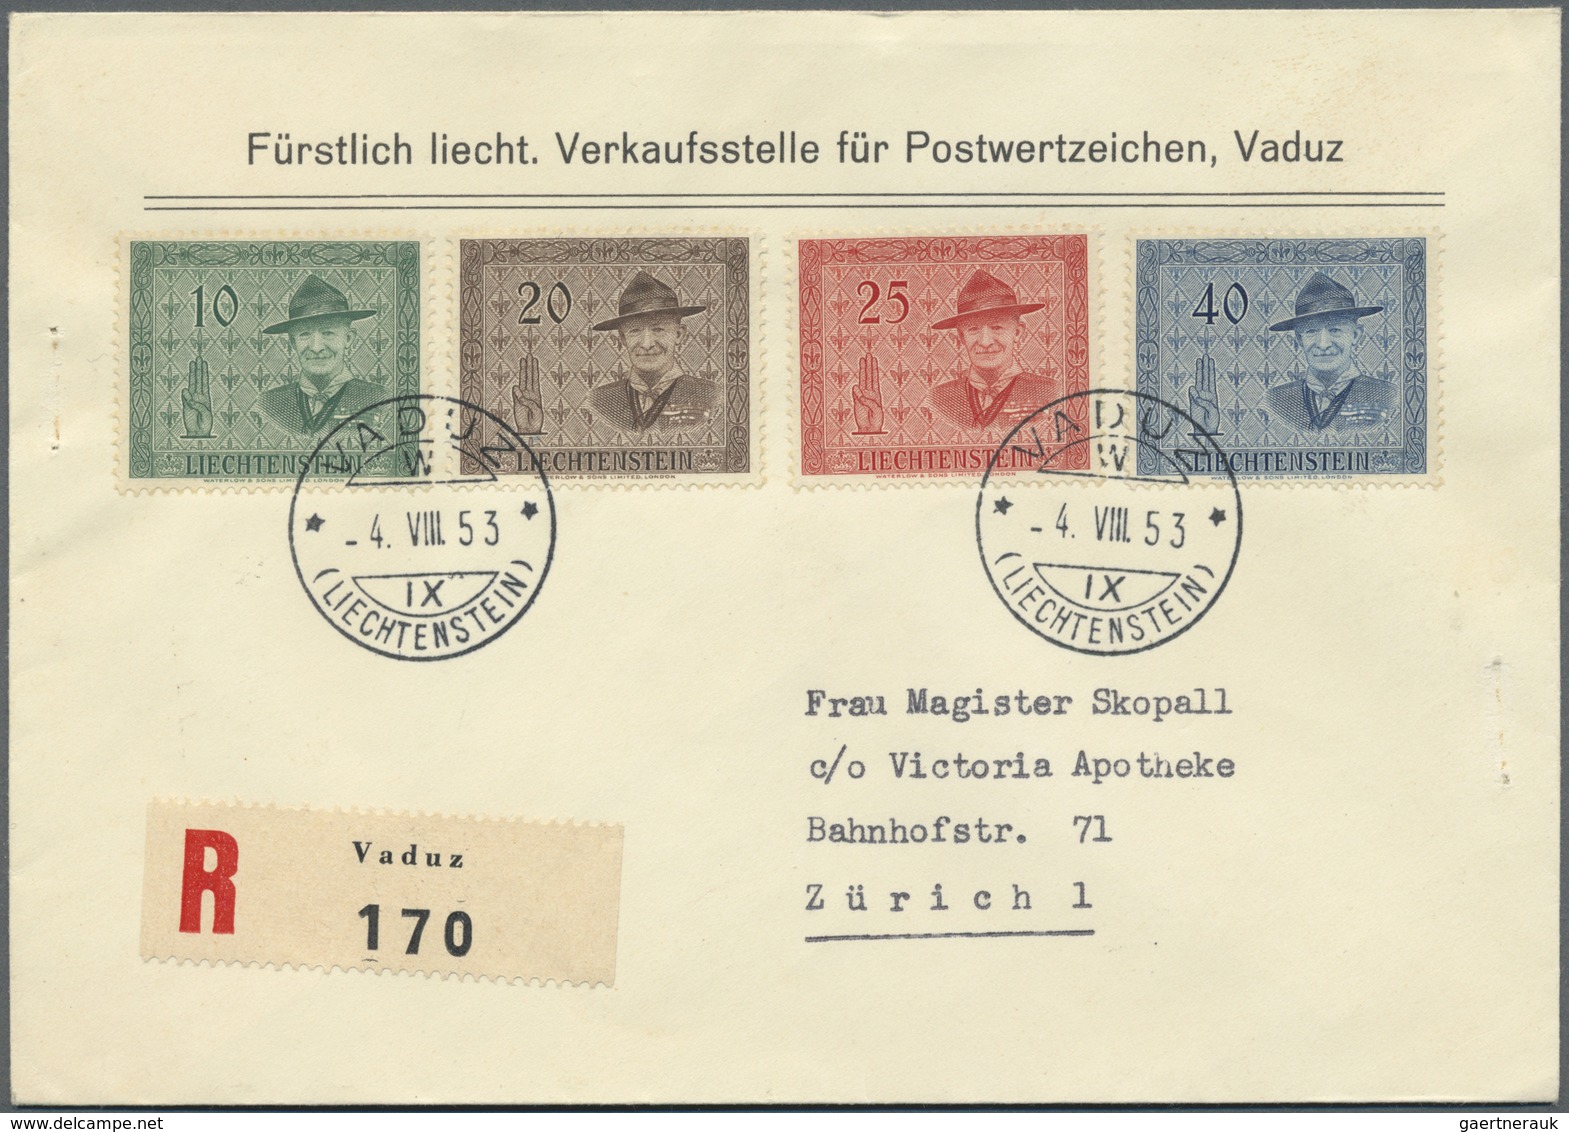 Br/GA/ Liechtenstein: 1918/1960, netter Sammlungsposten von über 100 Briefen und Ganzsachen, dabei bessere